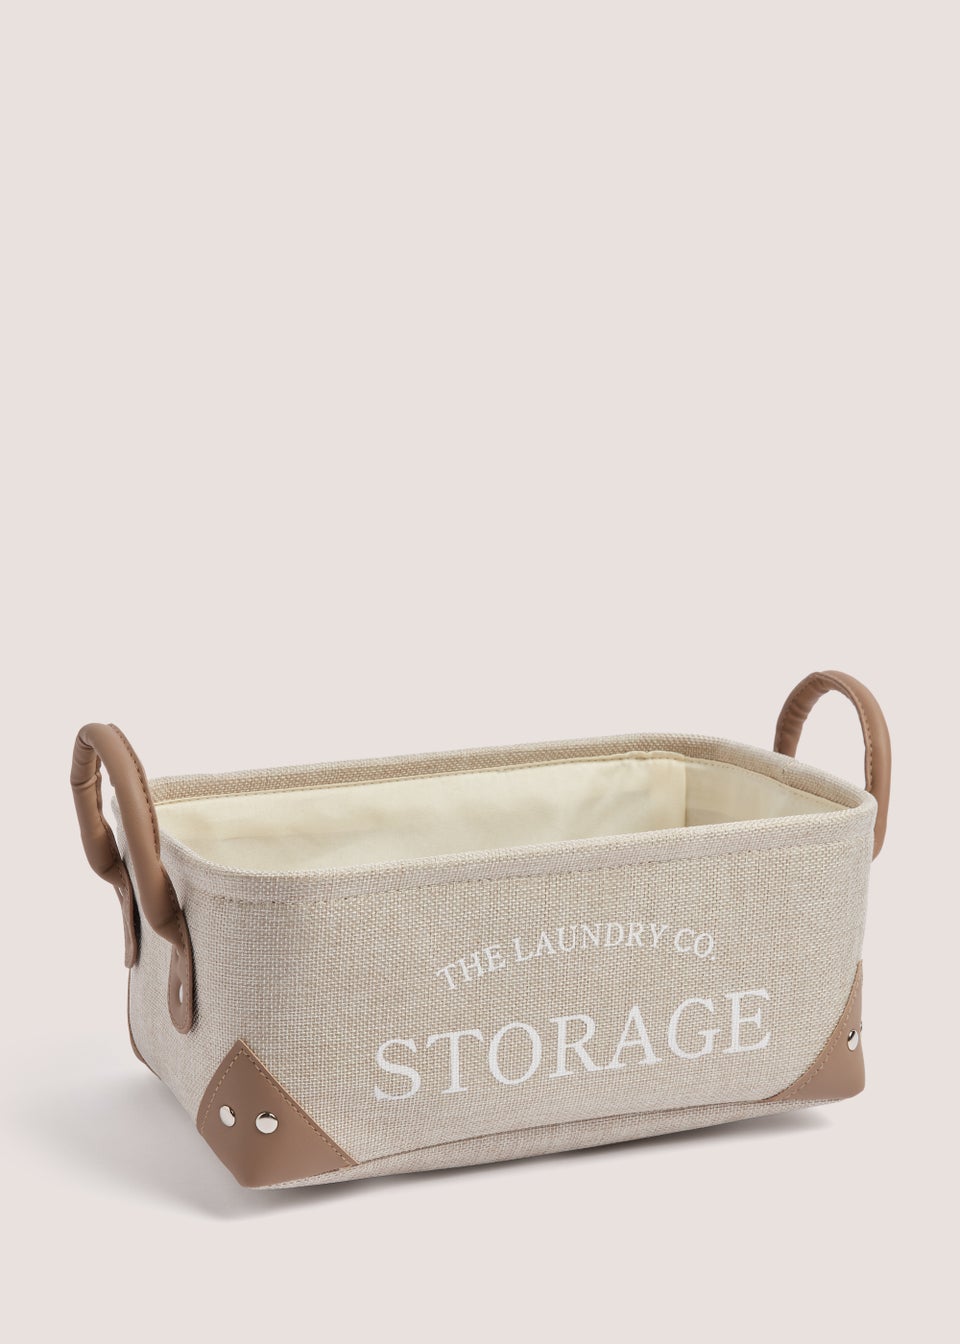 Natural Laundry Co Basket (13cm x 30cm x 20cm)